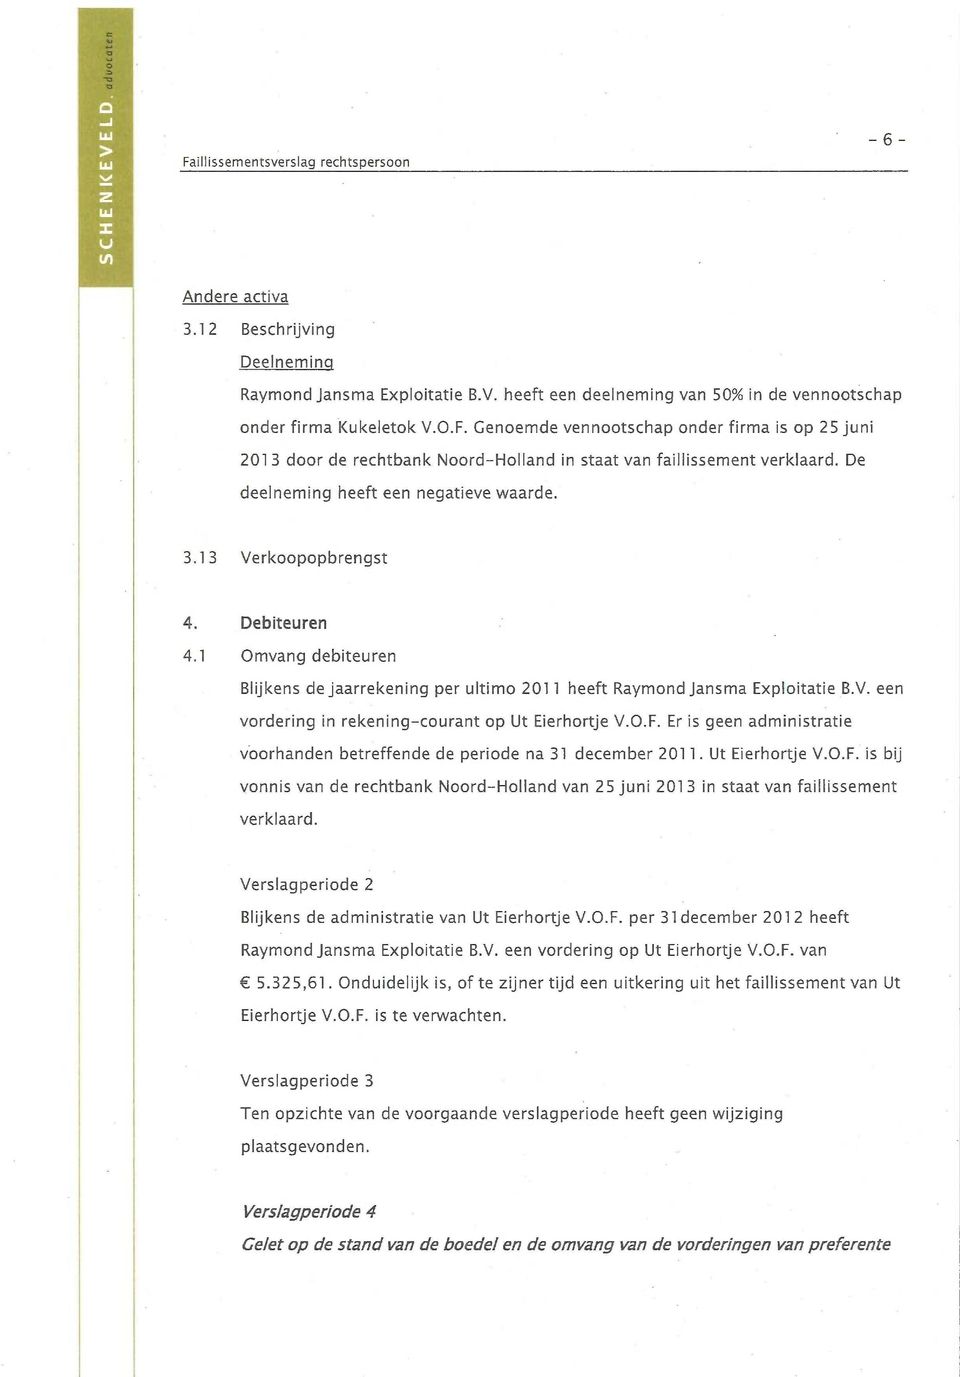 Debiteuren 4.1 Omvang debiteuren Blijkens de jaarrekening per ultimo 2011 heeft Raymond jansma Exploitatie B.V. een vordering in rekening-courant op Ut Eierhortje V.O.F.